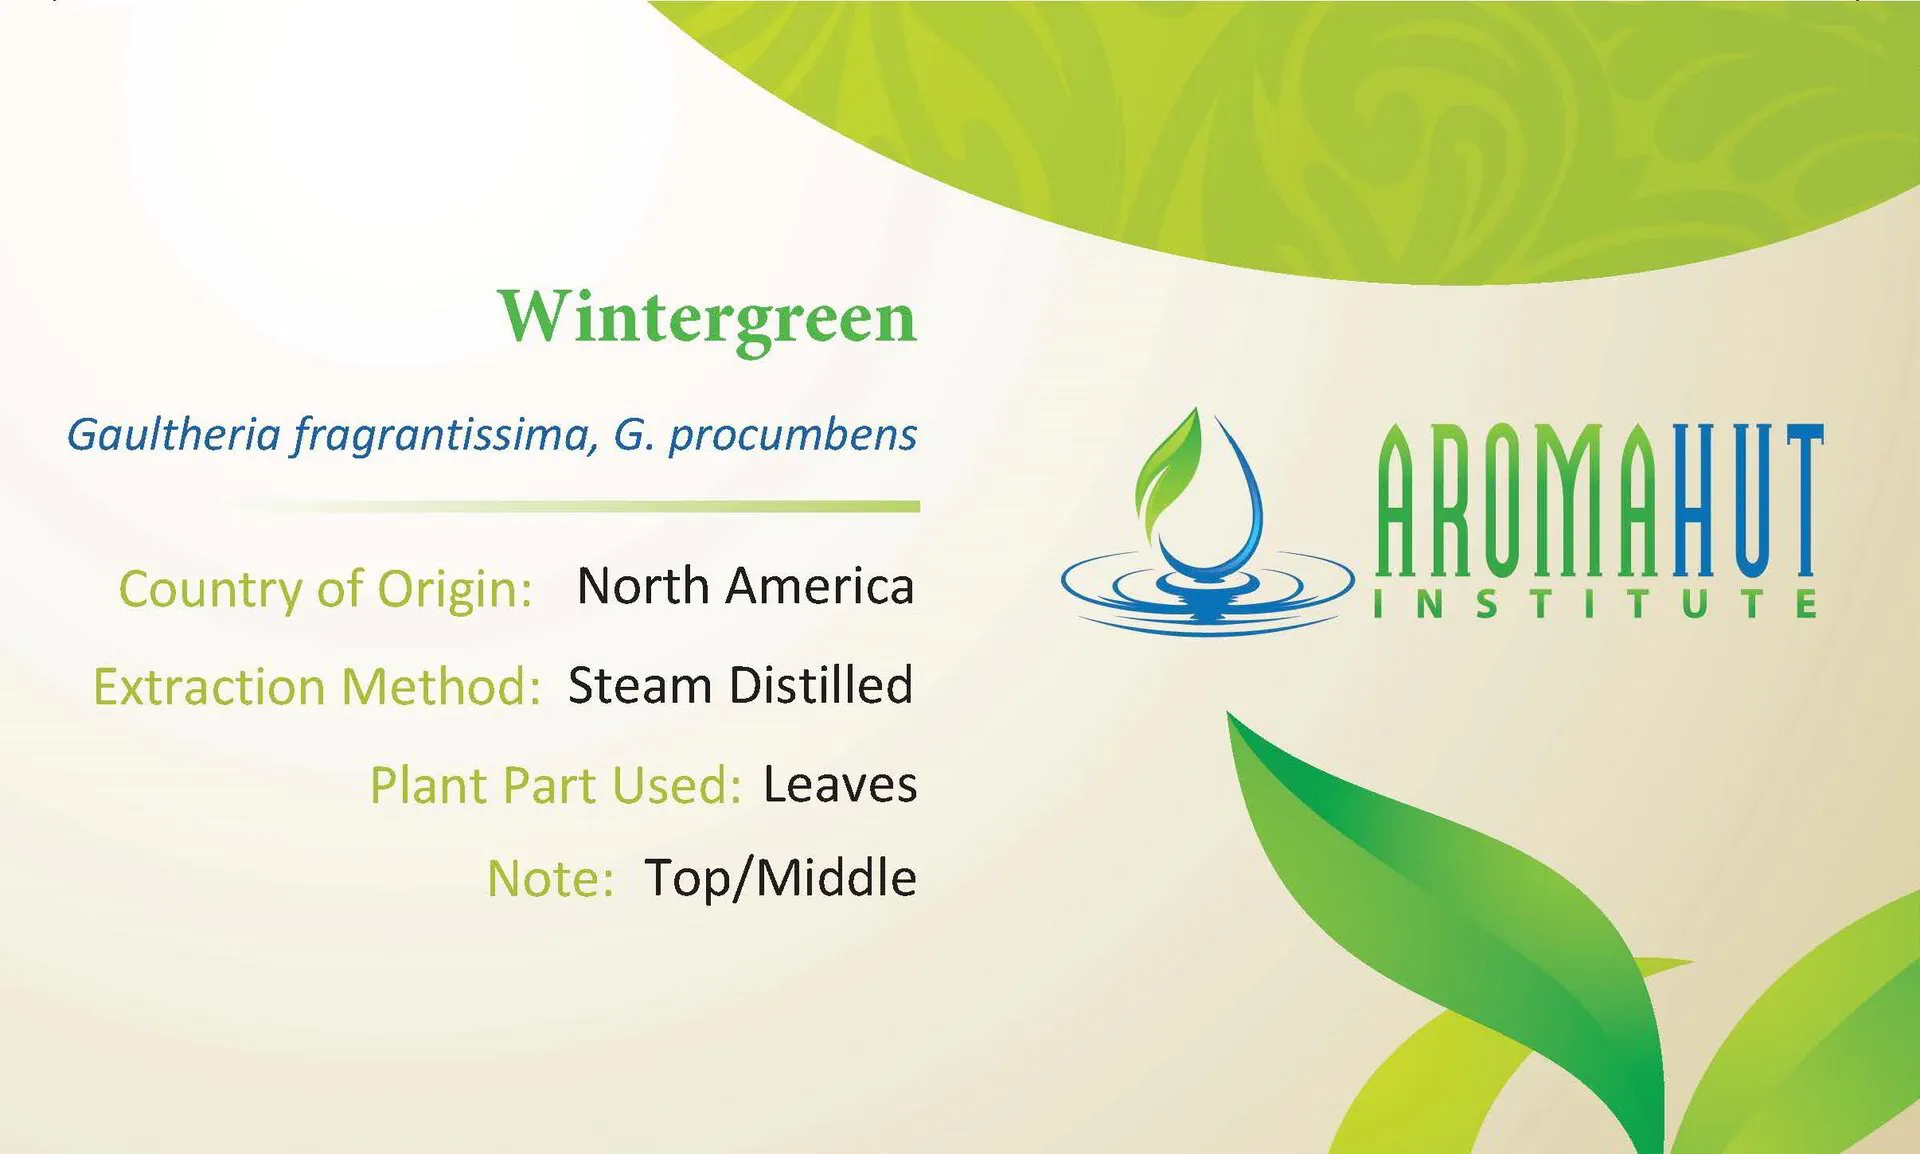 Wintergreen Essential Oil (Gaultheria fragrantissima, Gprocumbens) | Aroma Hut Institute)